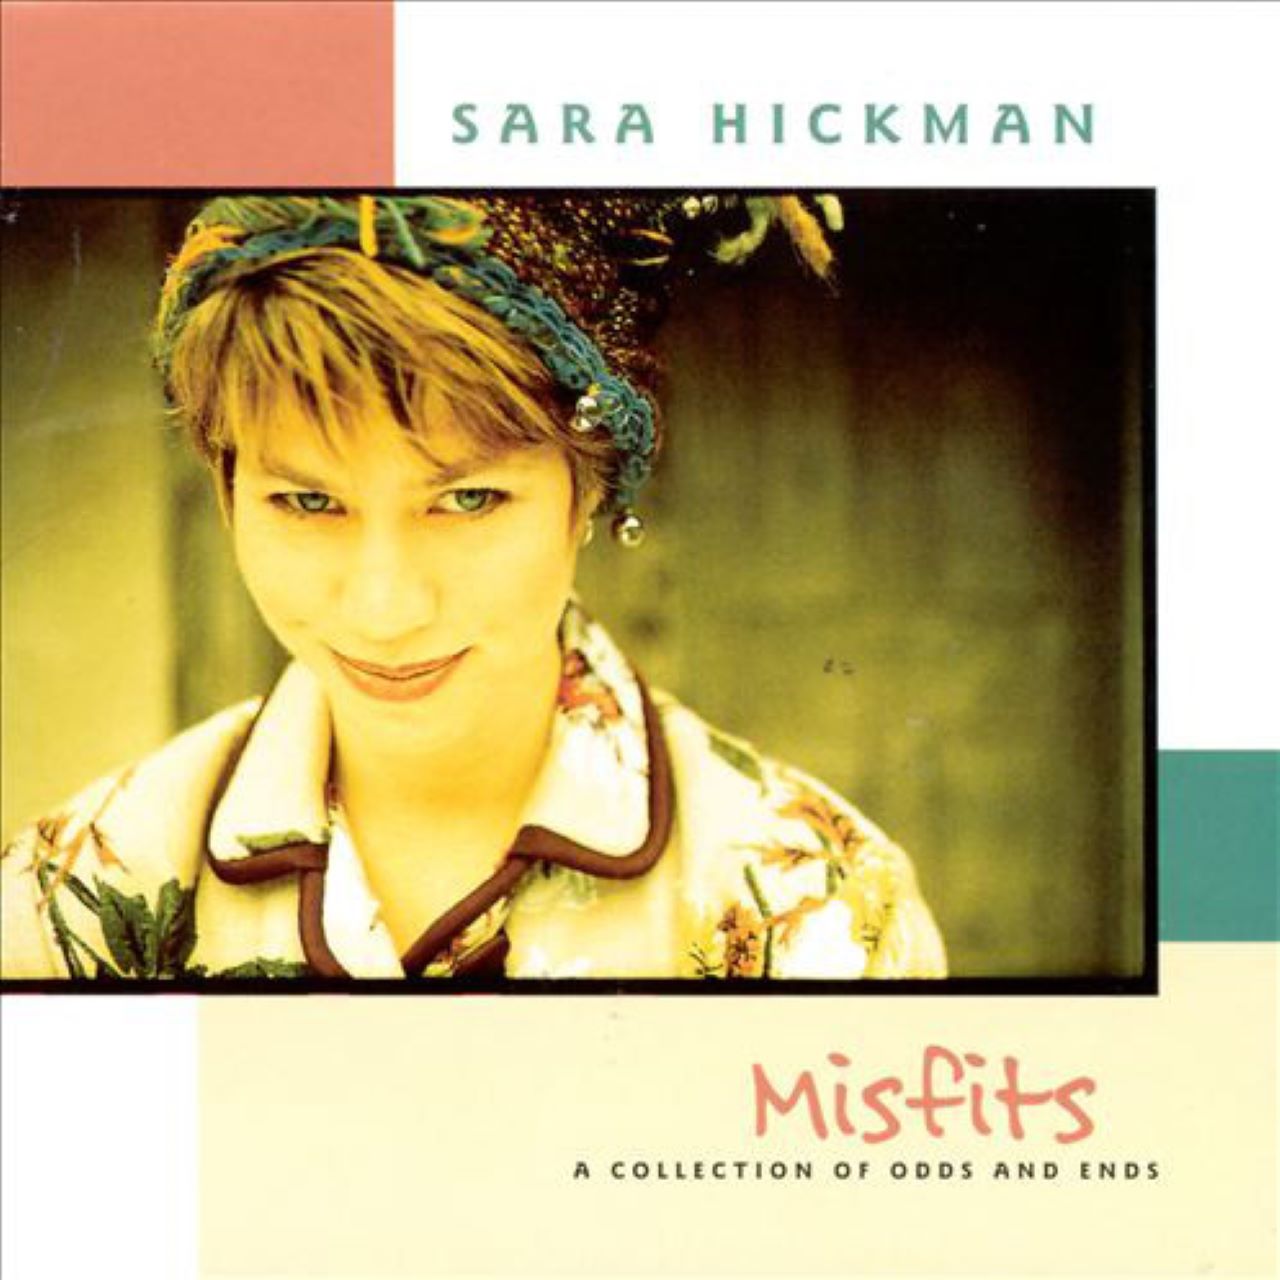 Sara Hickman - Misfits cover album